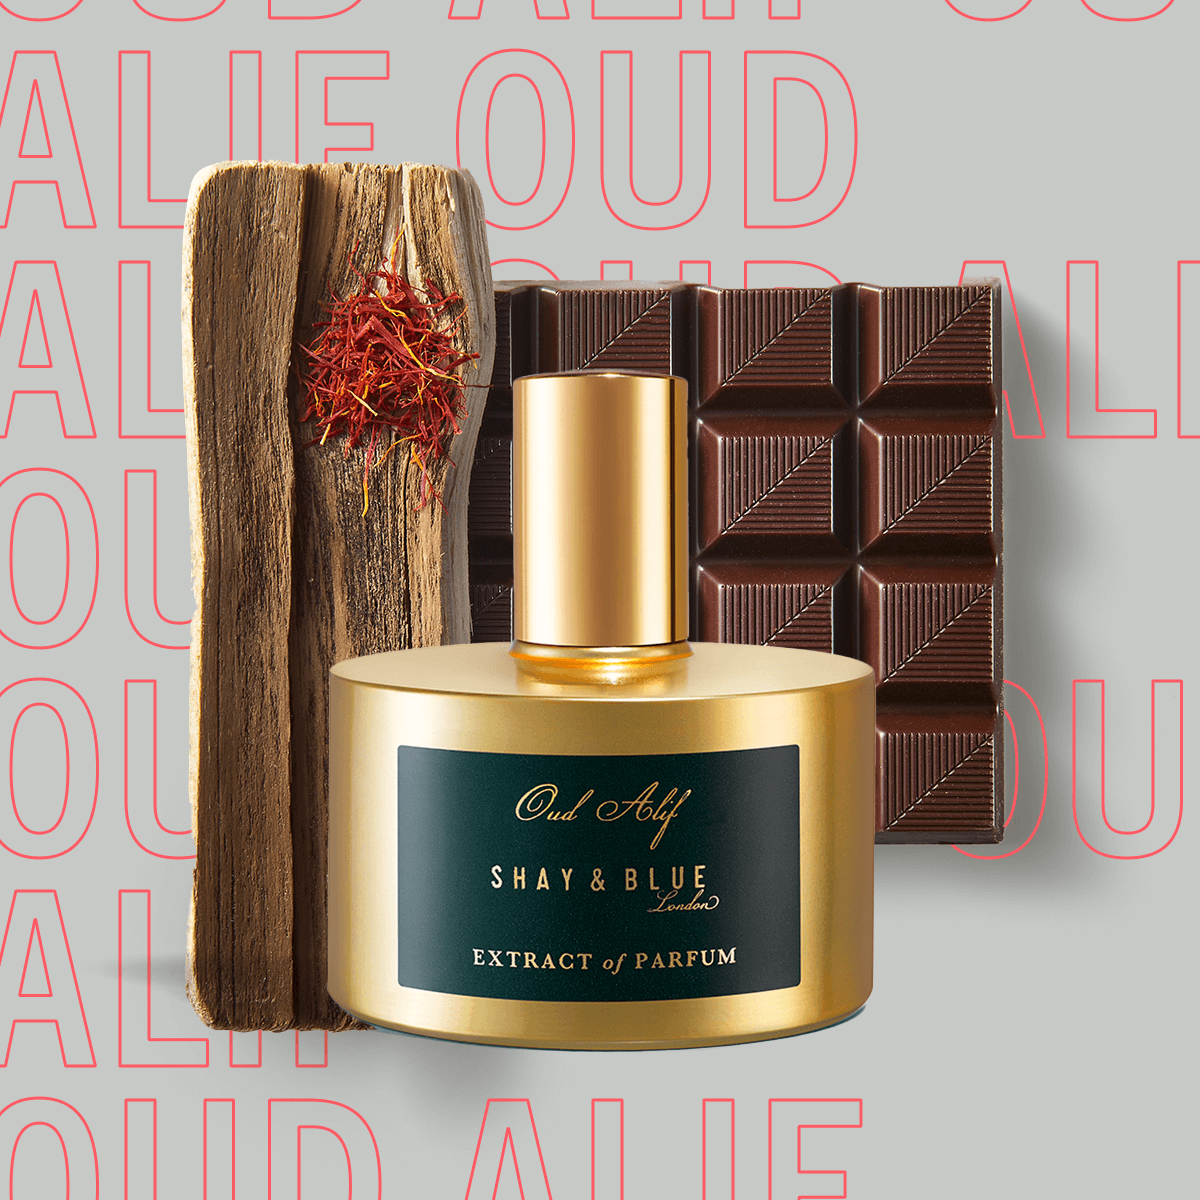 Oud Alif Extract of Parfum 60ml | Le meilleur oud agarwood relevé de chocolat noir, de safran et de patchouli sombre. | Parfum d'ambiance - Clean All Gender Fragrance - Shay & Blue